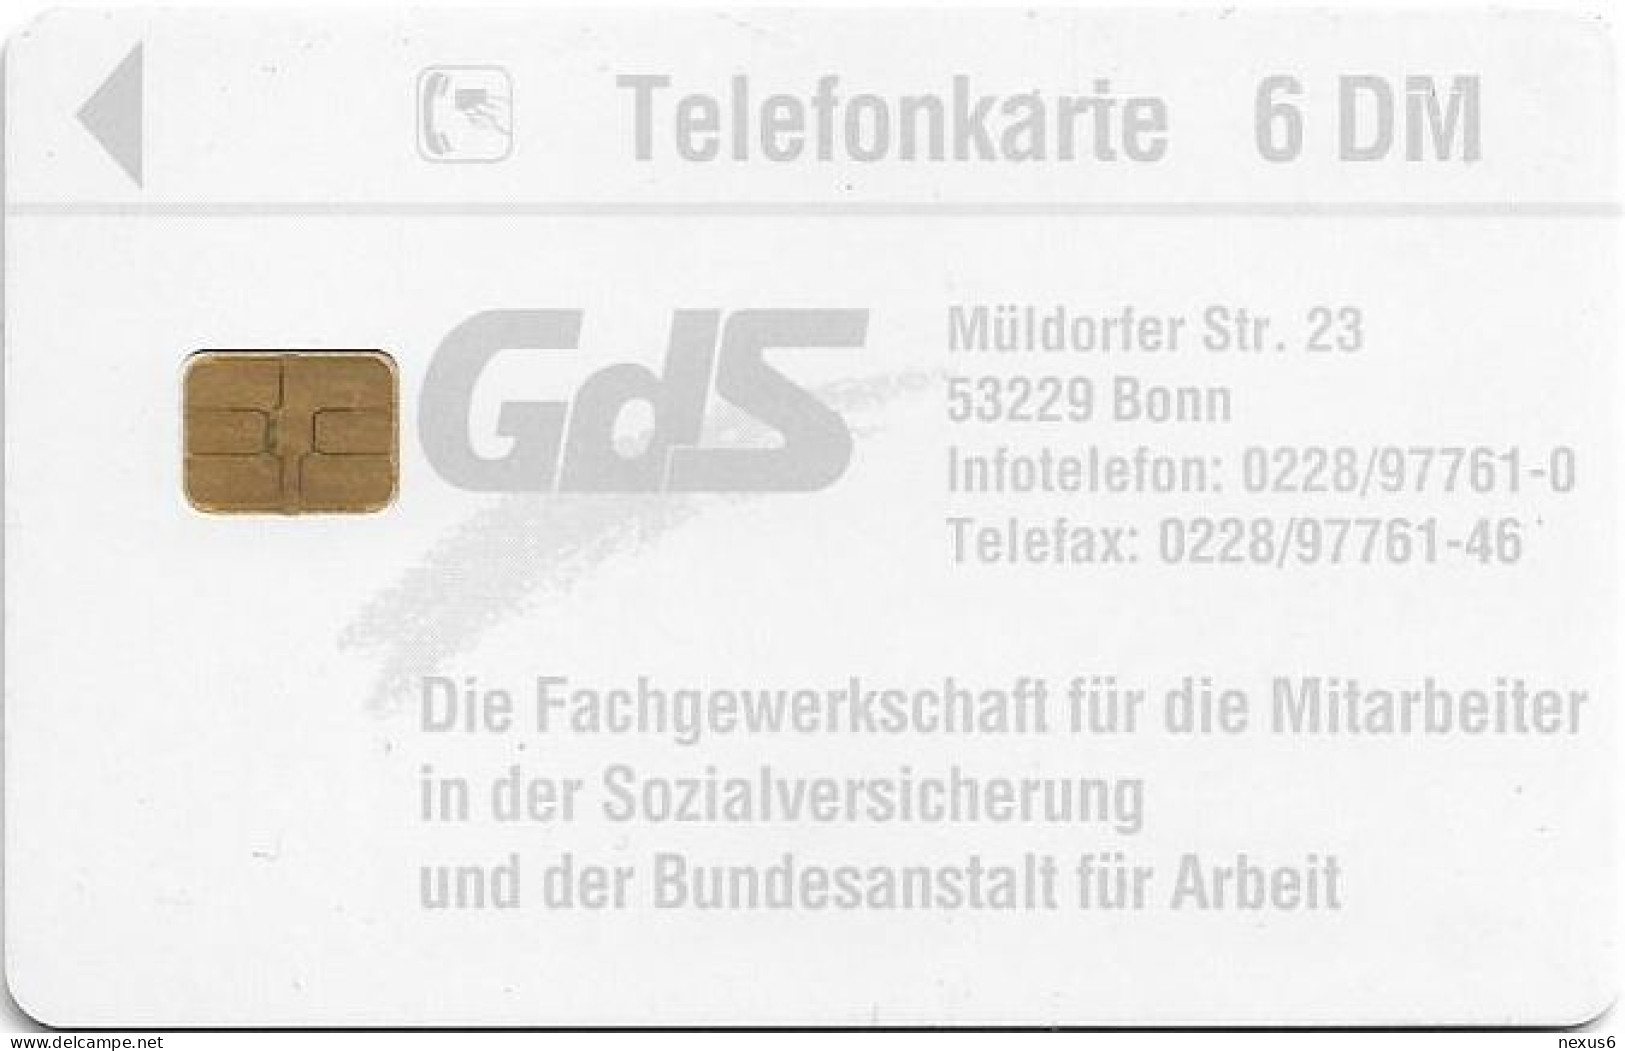 Germany - GdS - Gewerkschaft Der Sozialversicherung 2 - O 0387 - 03.1995, 6DM, 2.000ex, Used - O-Reeksen : Klantenreeksen